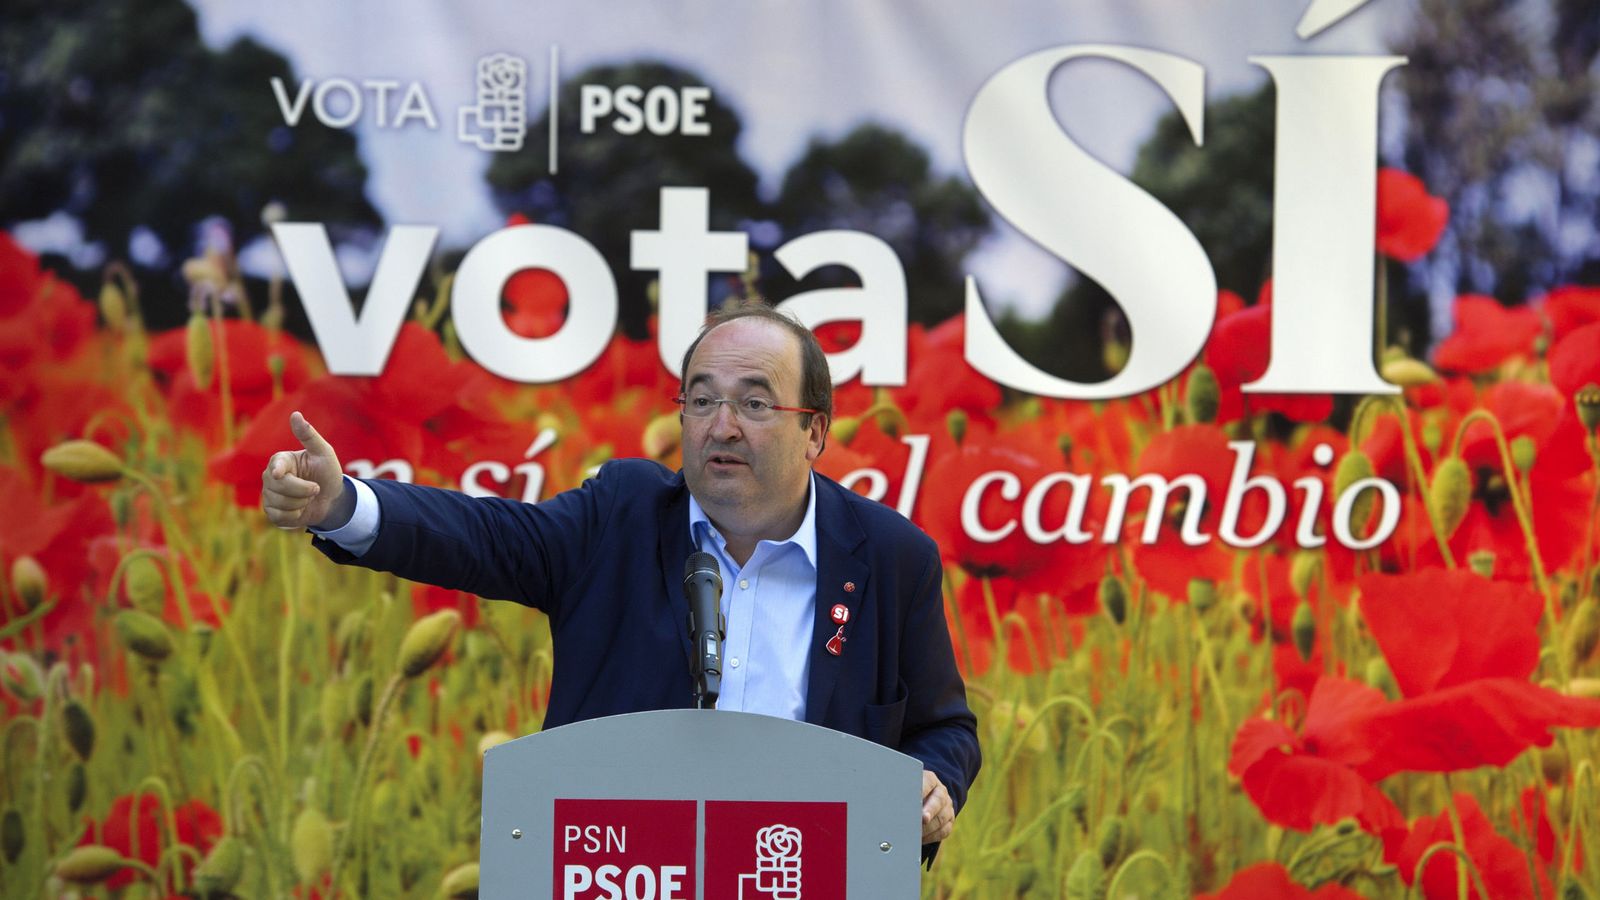 Foto: Iceta afirma que el PSOE no se abstendrá "seguro" si Fernández Díaz continúa (Efe).